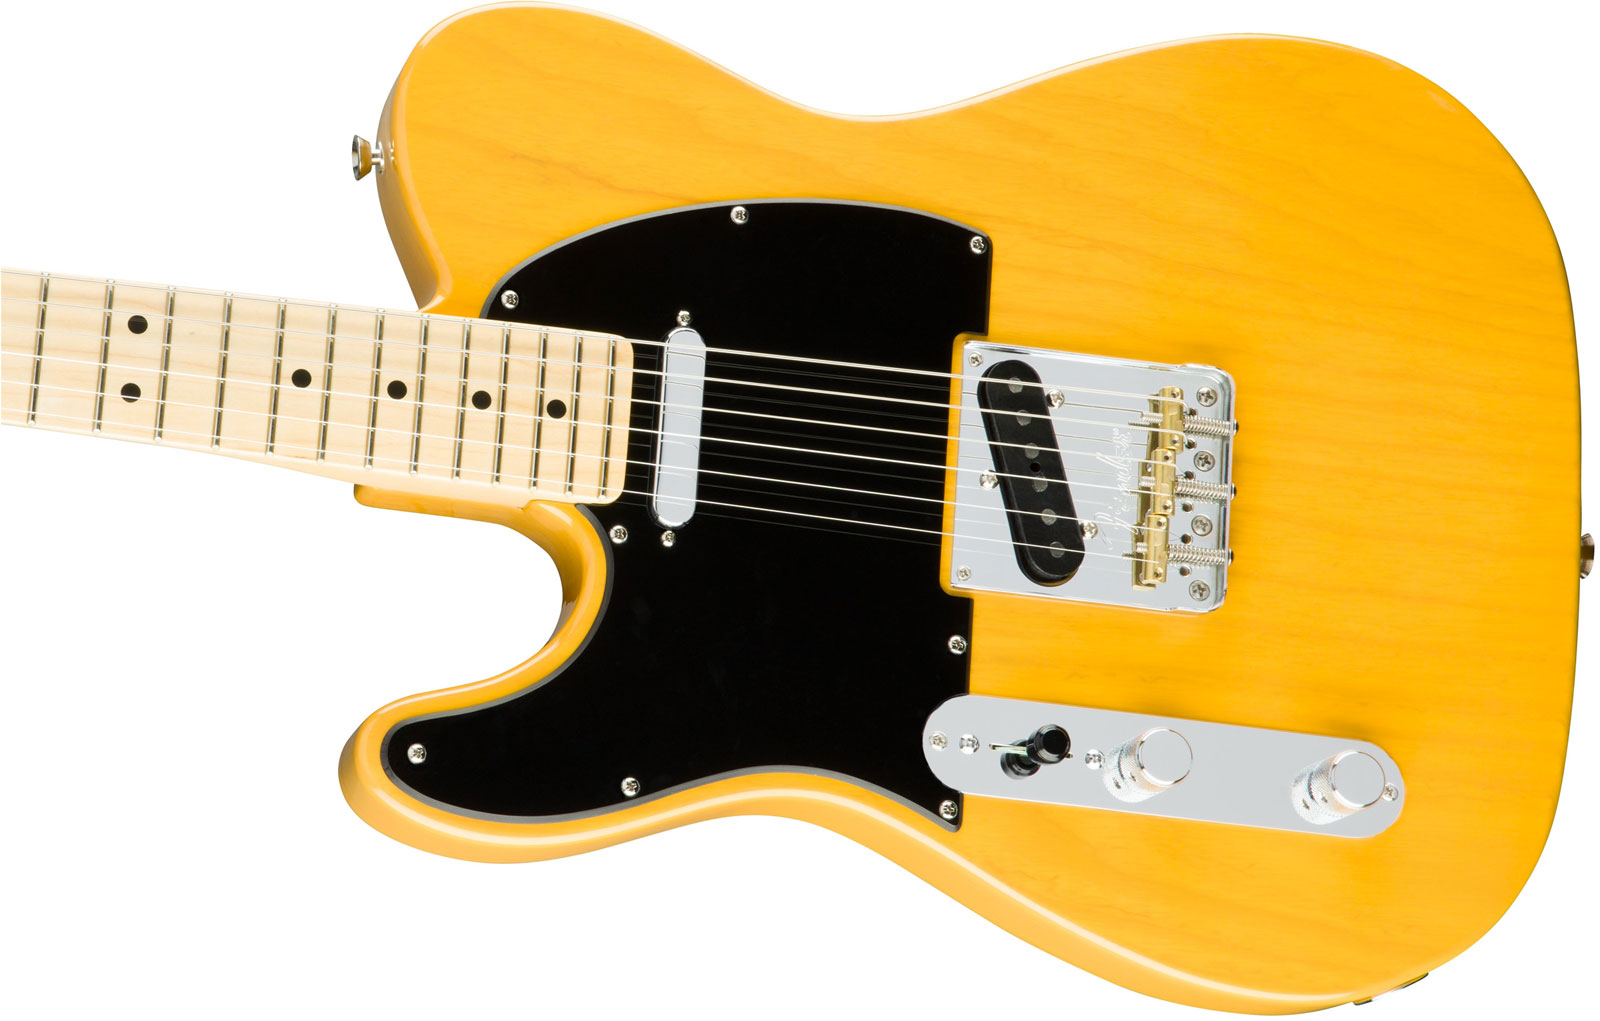 Fender Tele American Professional Lh Usa Gaucher 2s Mn - Butterscotch Blonde - Guitarra electrica para zurdos - Variation 3